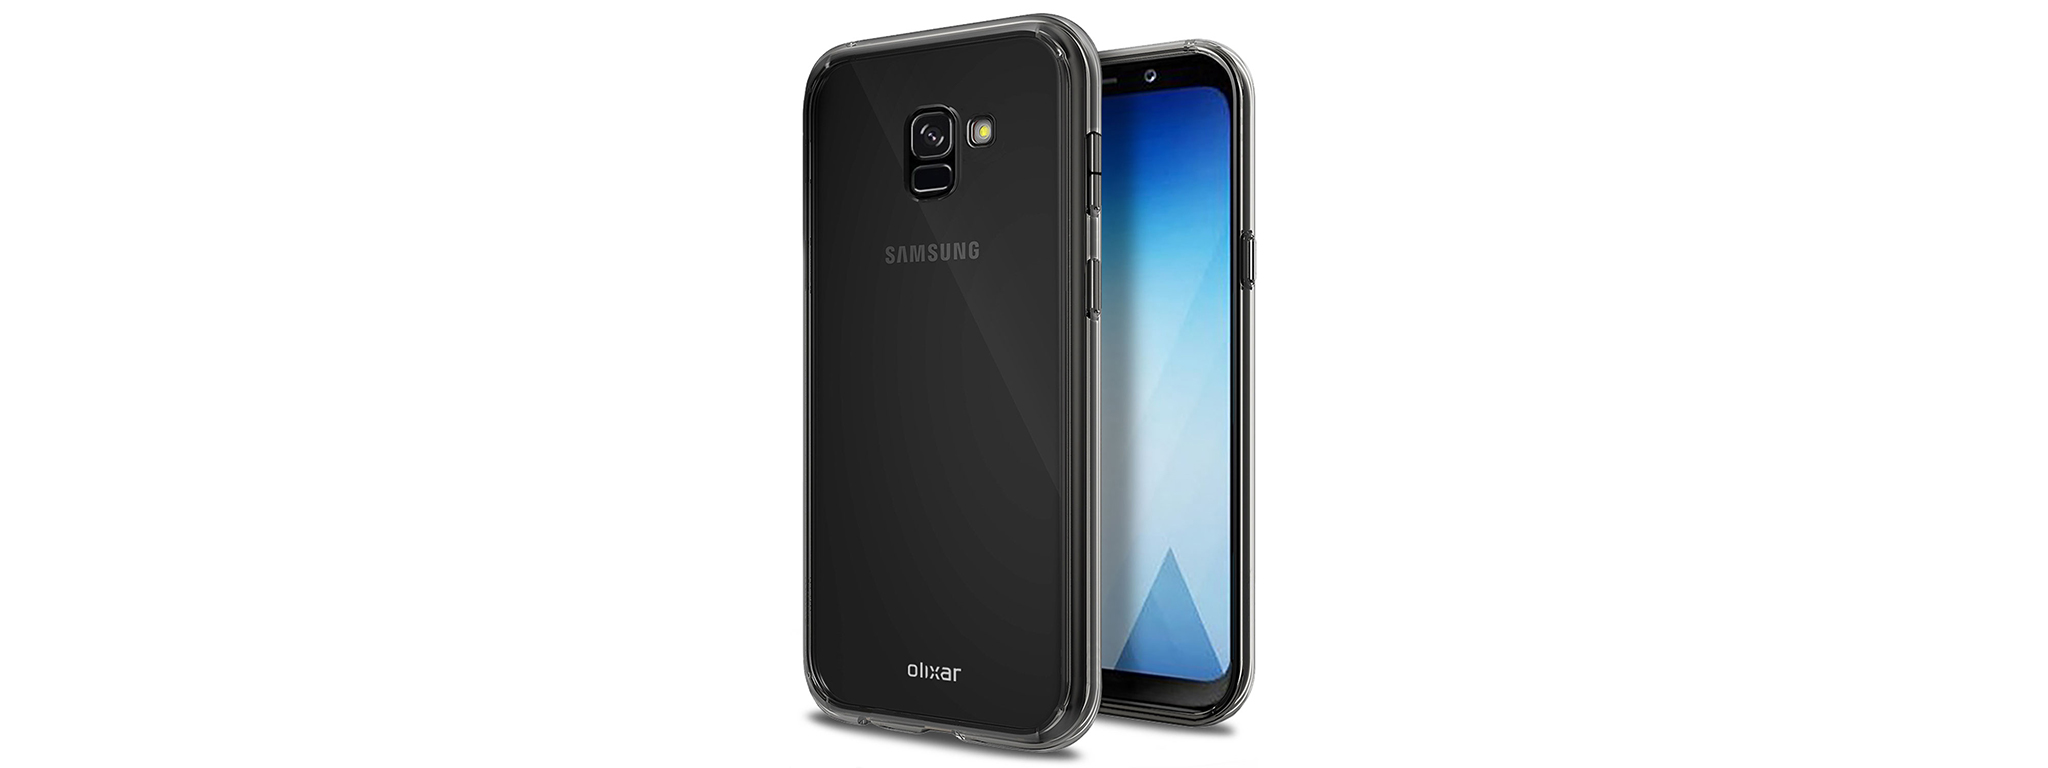 Galaxy A5 2018 lộ diện qua ốp lưng của Olixar: màn hình vô cực, có Bixby